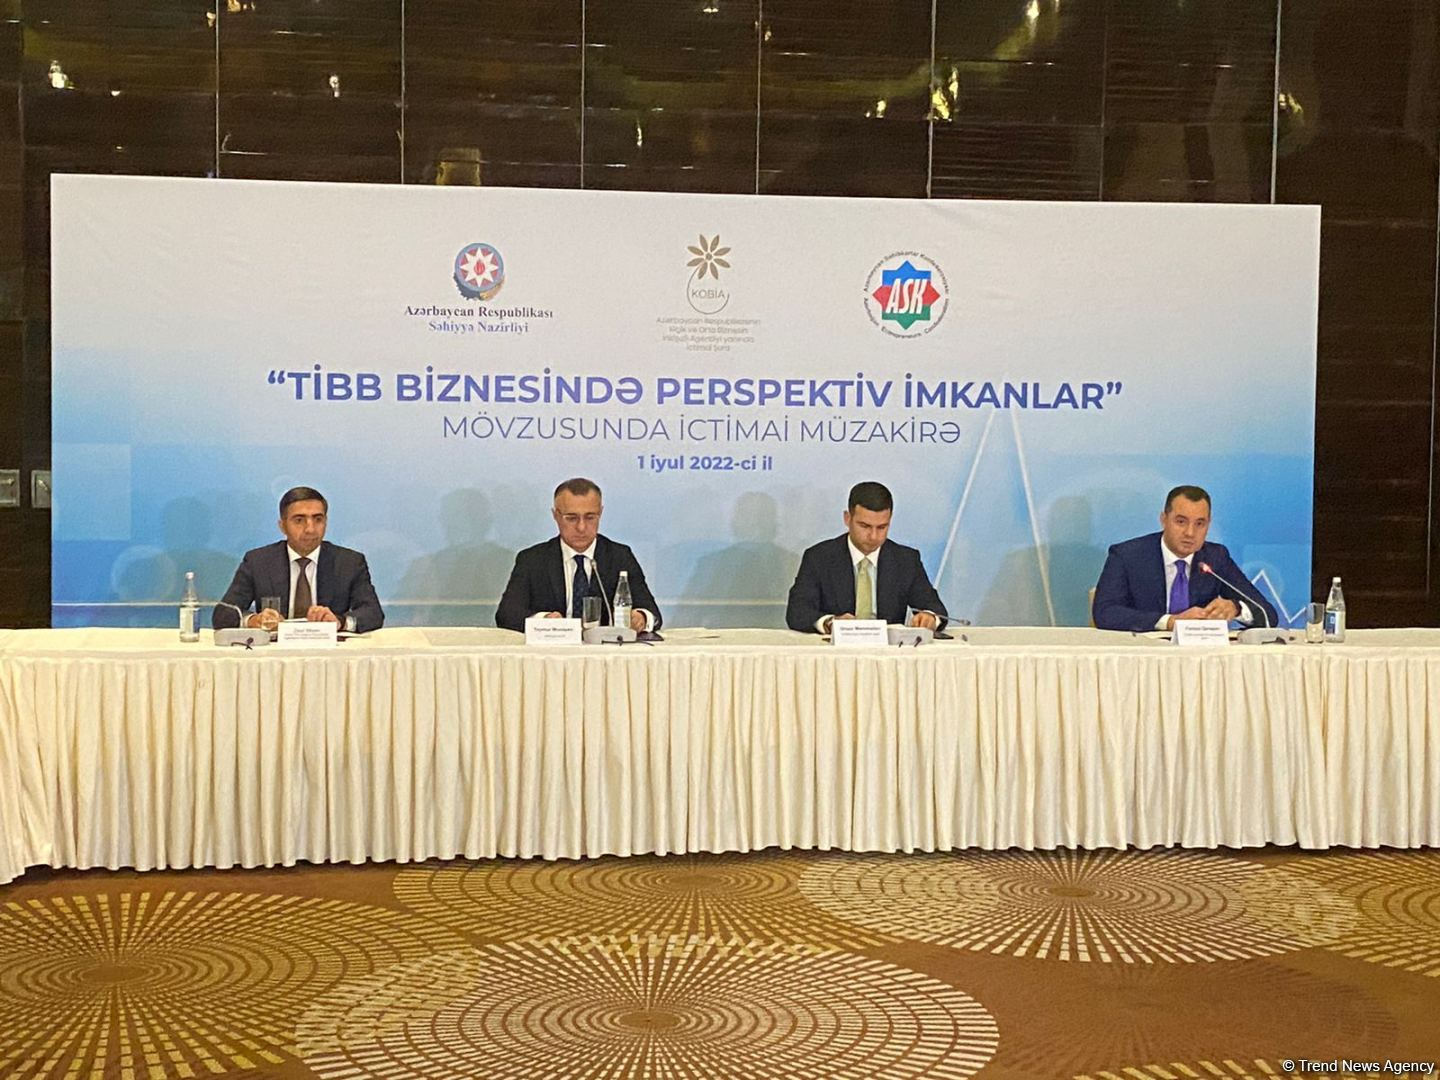 В Азербайджане государственно-частное партнерство в сфере здравоохранения способствует развитию медицины - министр (ФОТО)